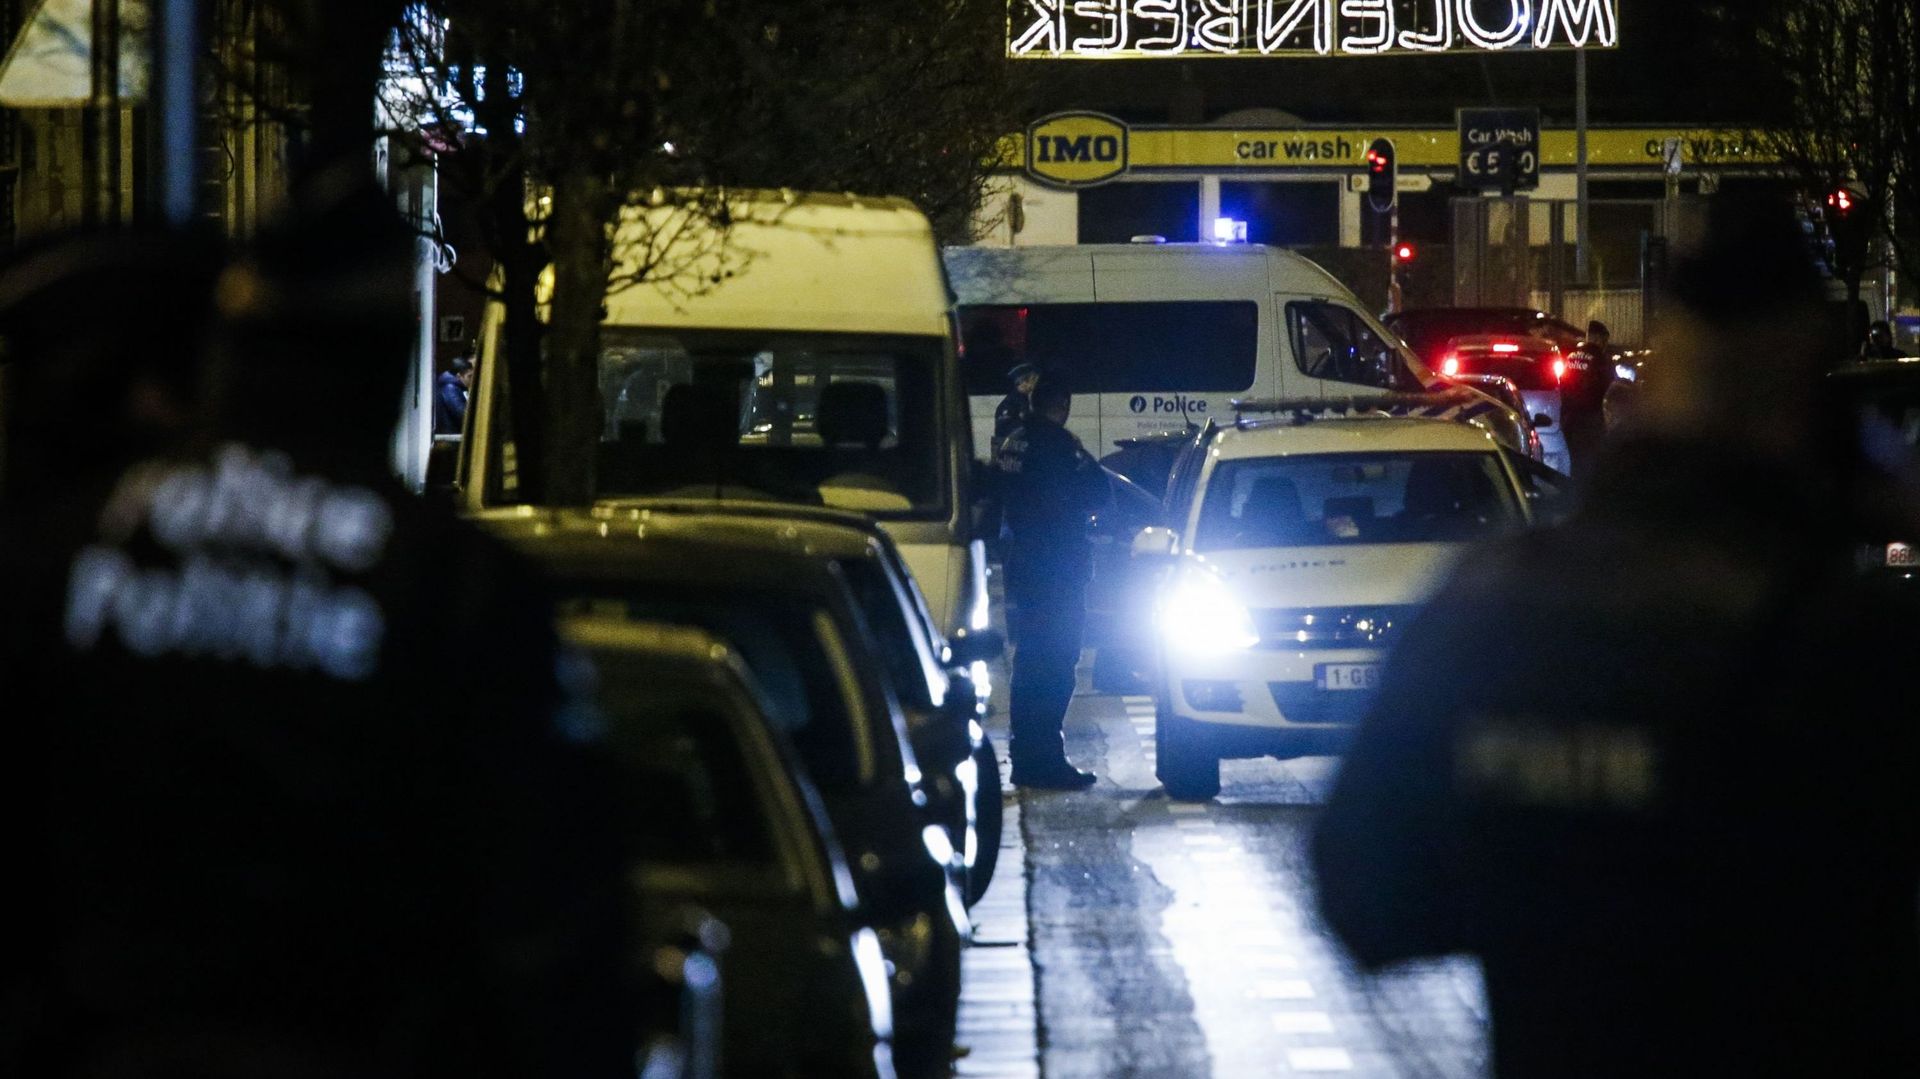 La personne arrêtée à Molenbeek ce mercredi inculpée "d'assassinats terroristes"